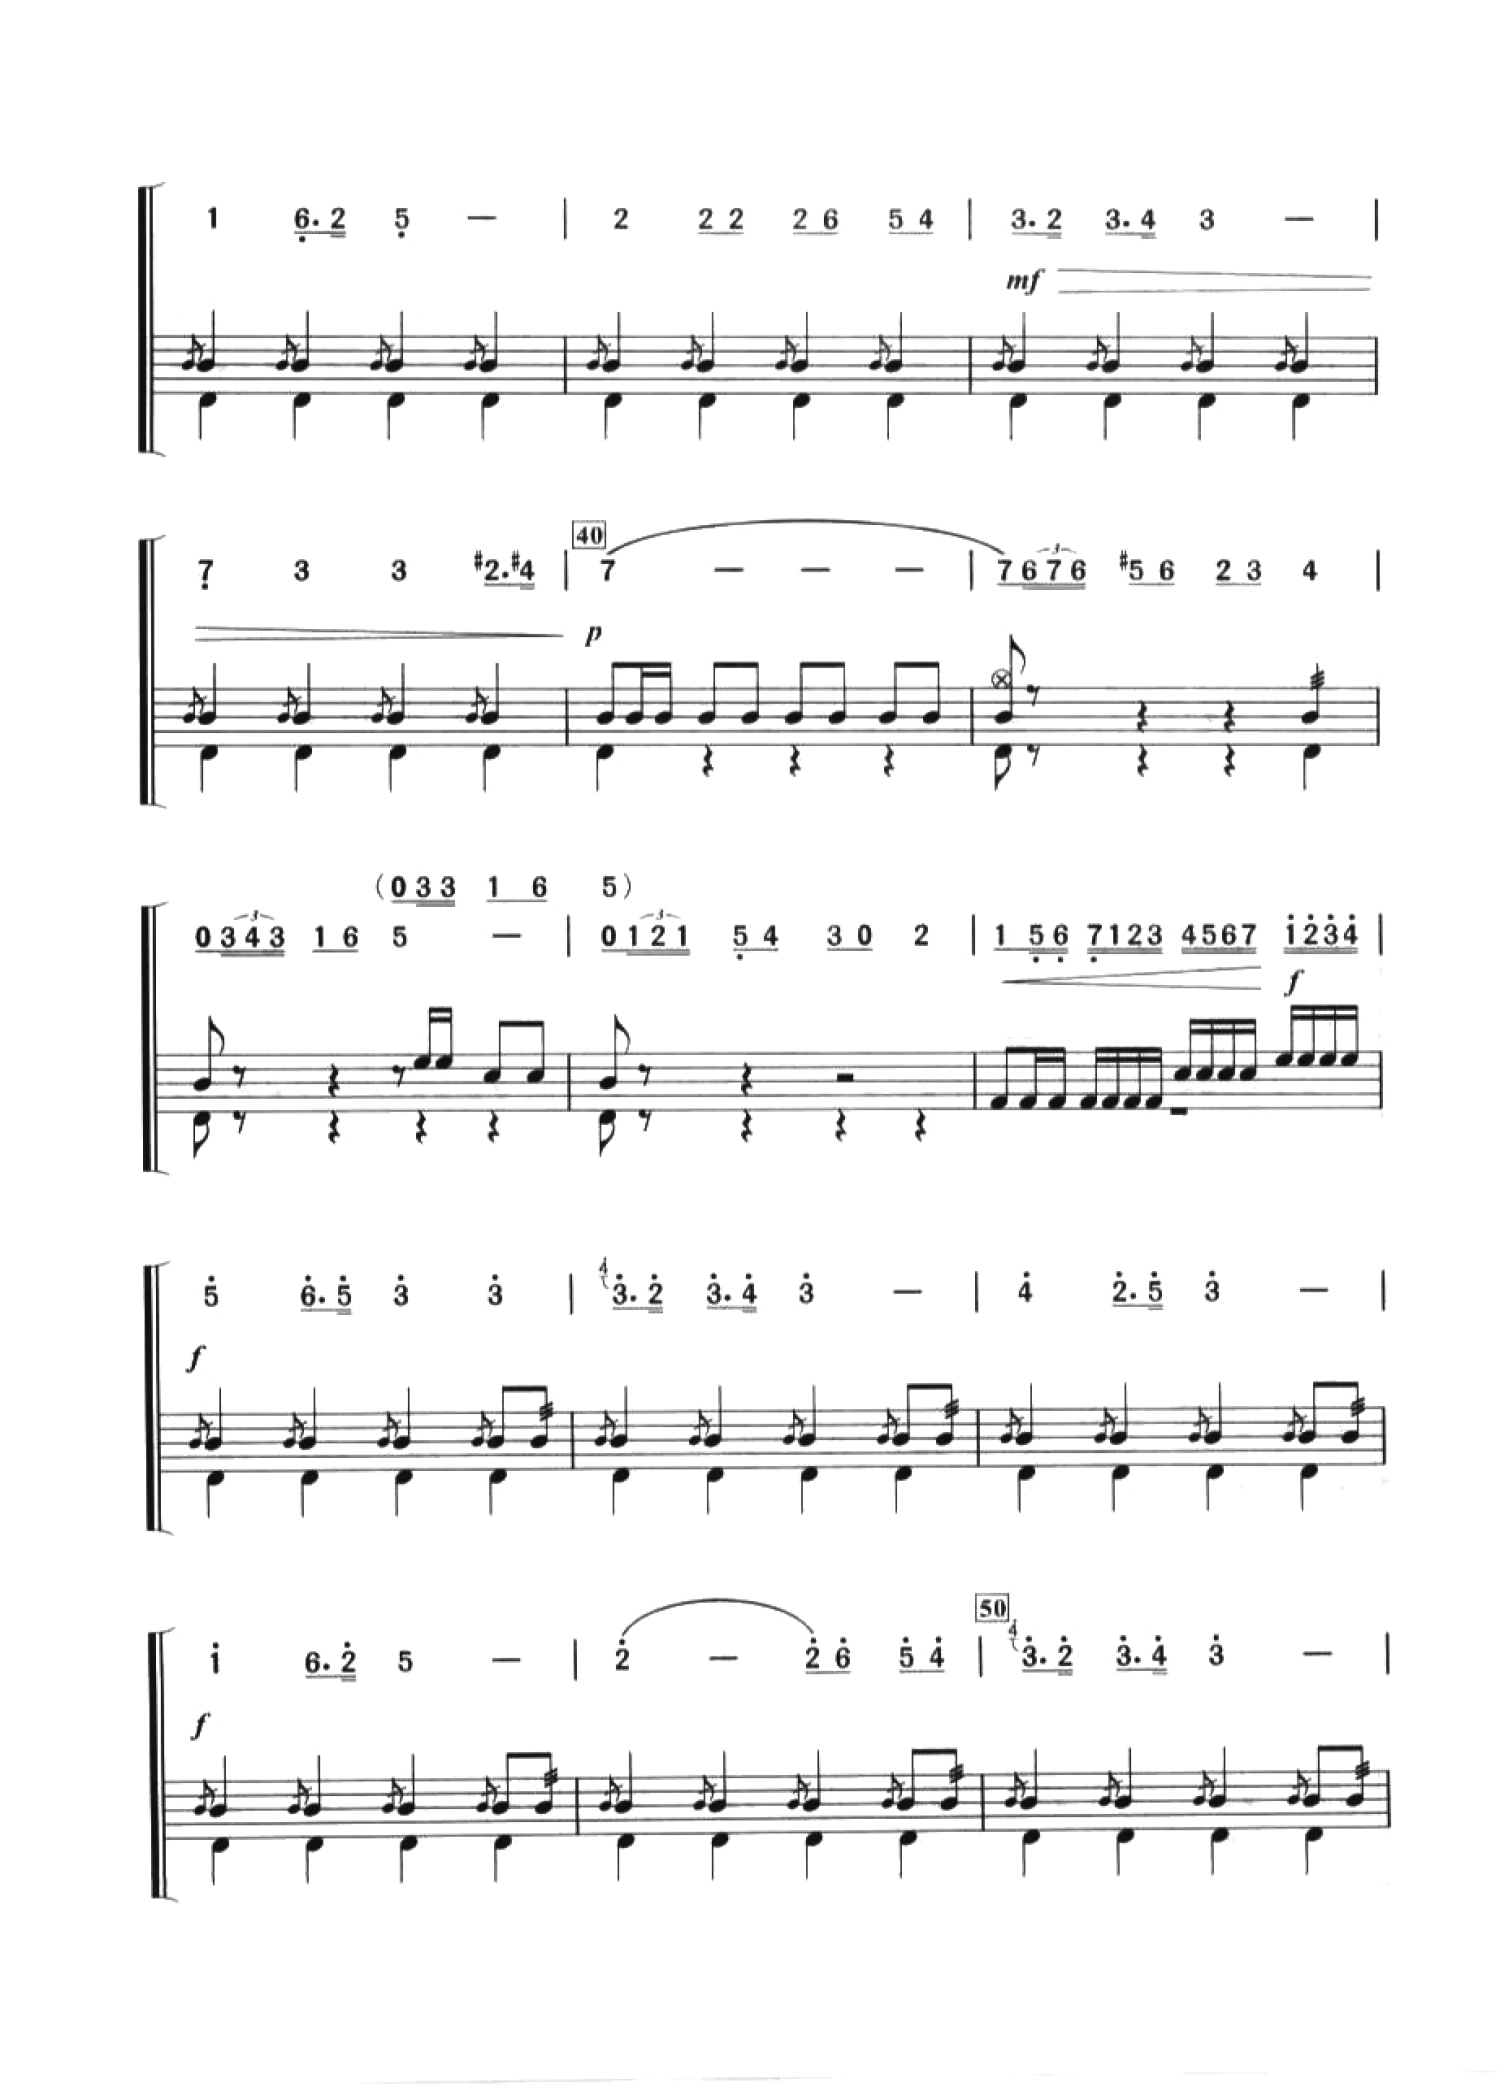 《Rush卡门,钢琴谱》Rush A+卡门序曲组合,Sheet Music BOSS|弹琴吧|钢琴谱|吉他谱|钢琴曲|乐谱|五线谱|简谱|高清 ...